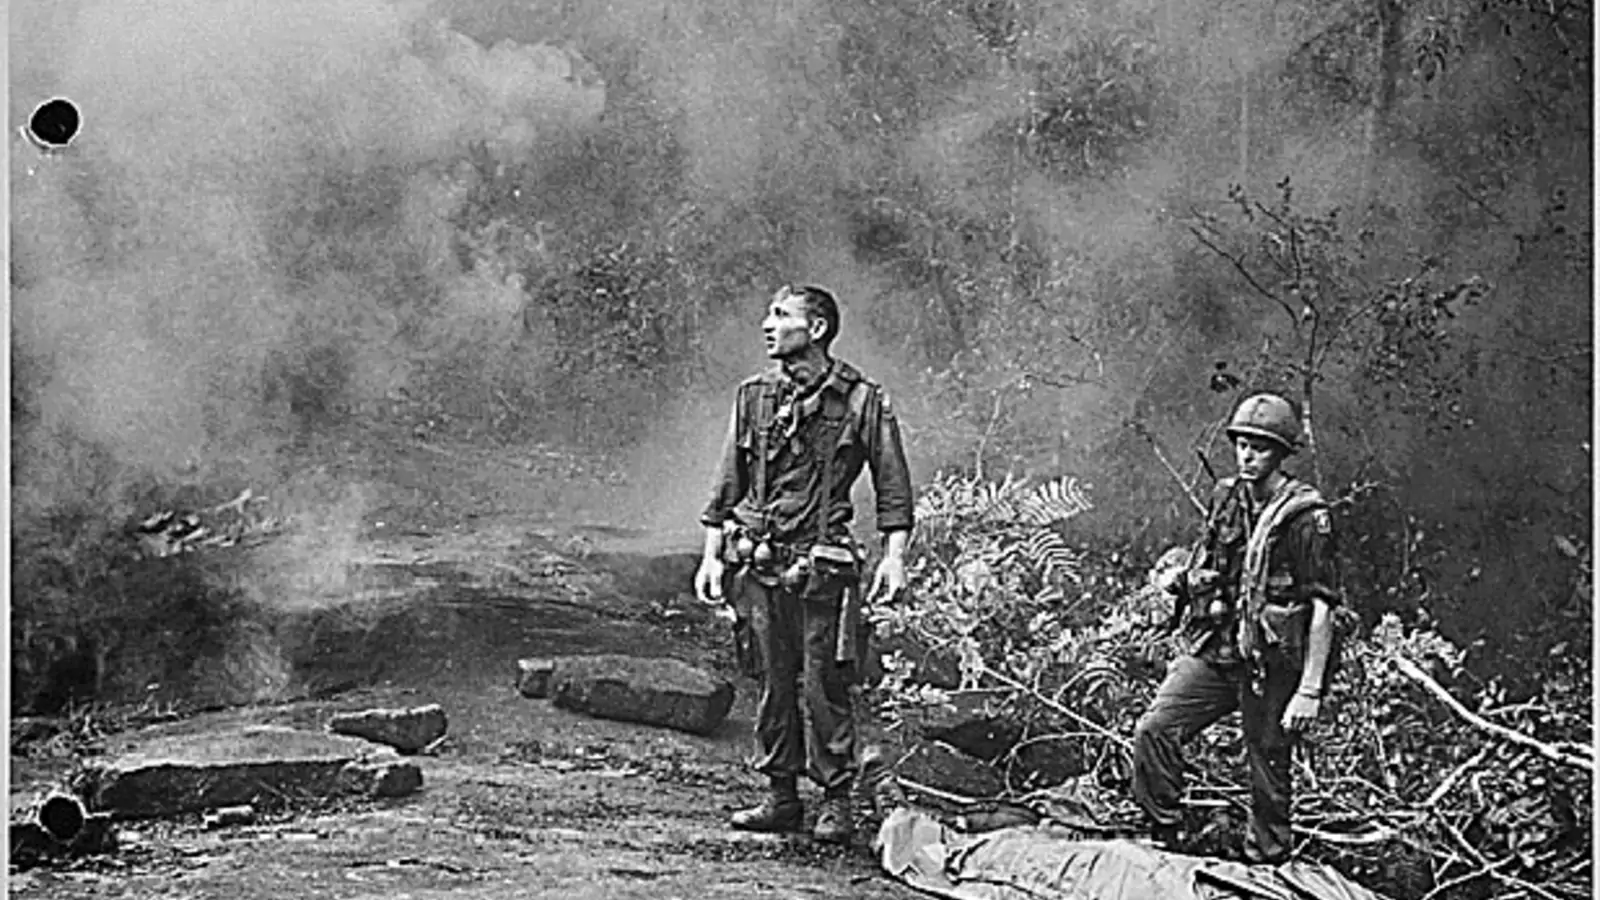 https://cdn.cfr.org/sites/default/files/styles/full_width_xl/public/image/2015/03/Vietnam-War-Memoirs.jpg